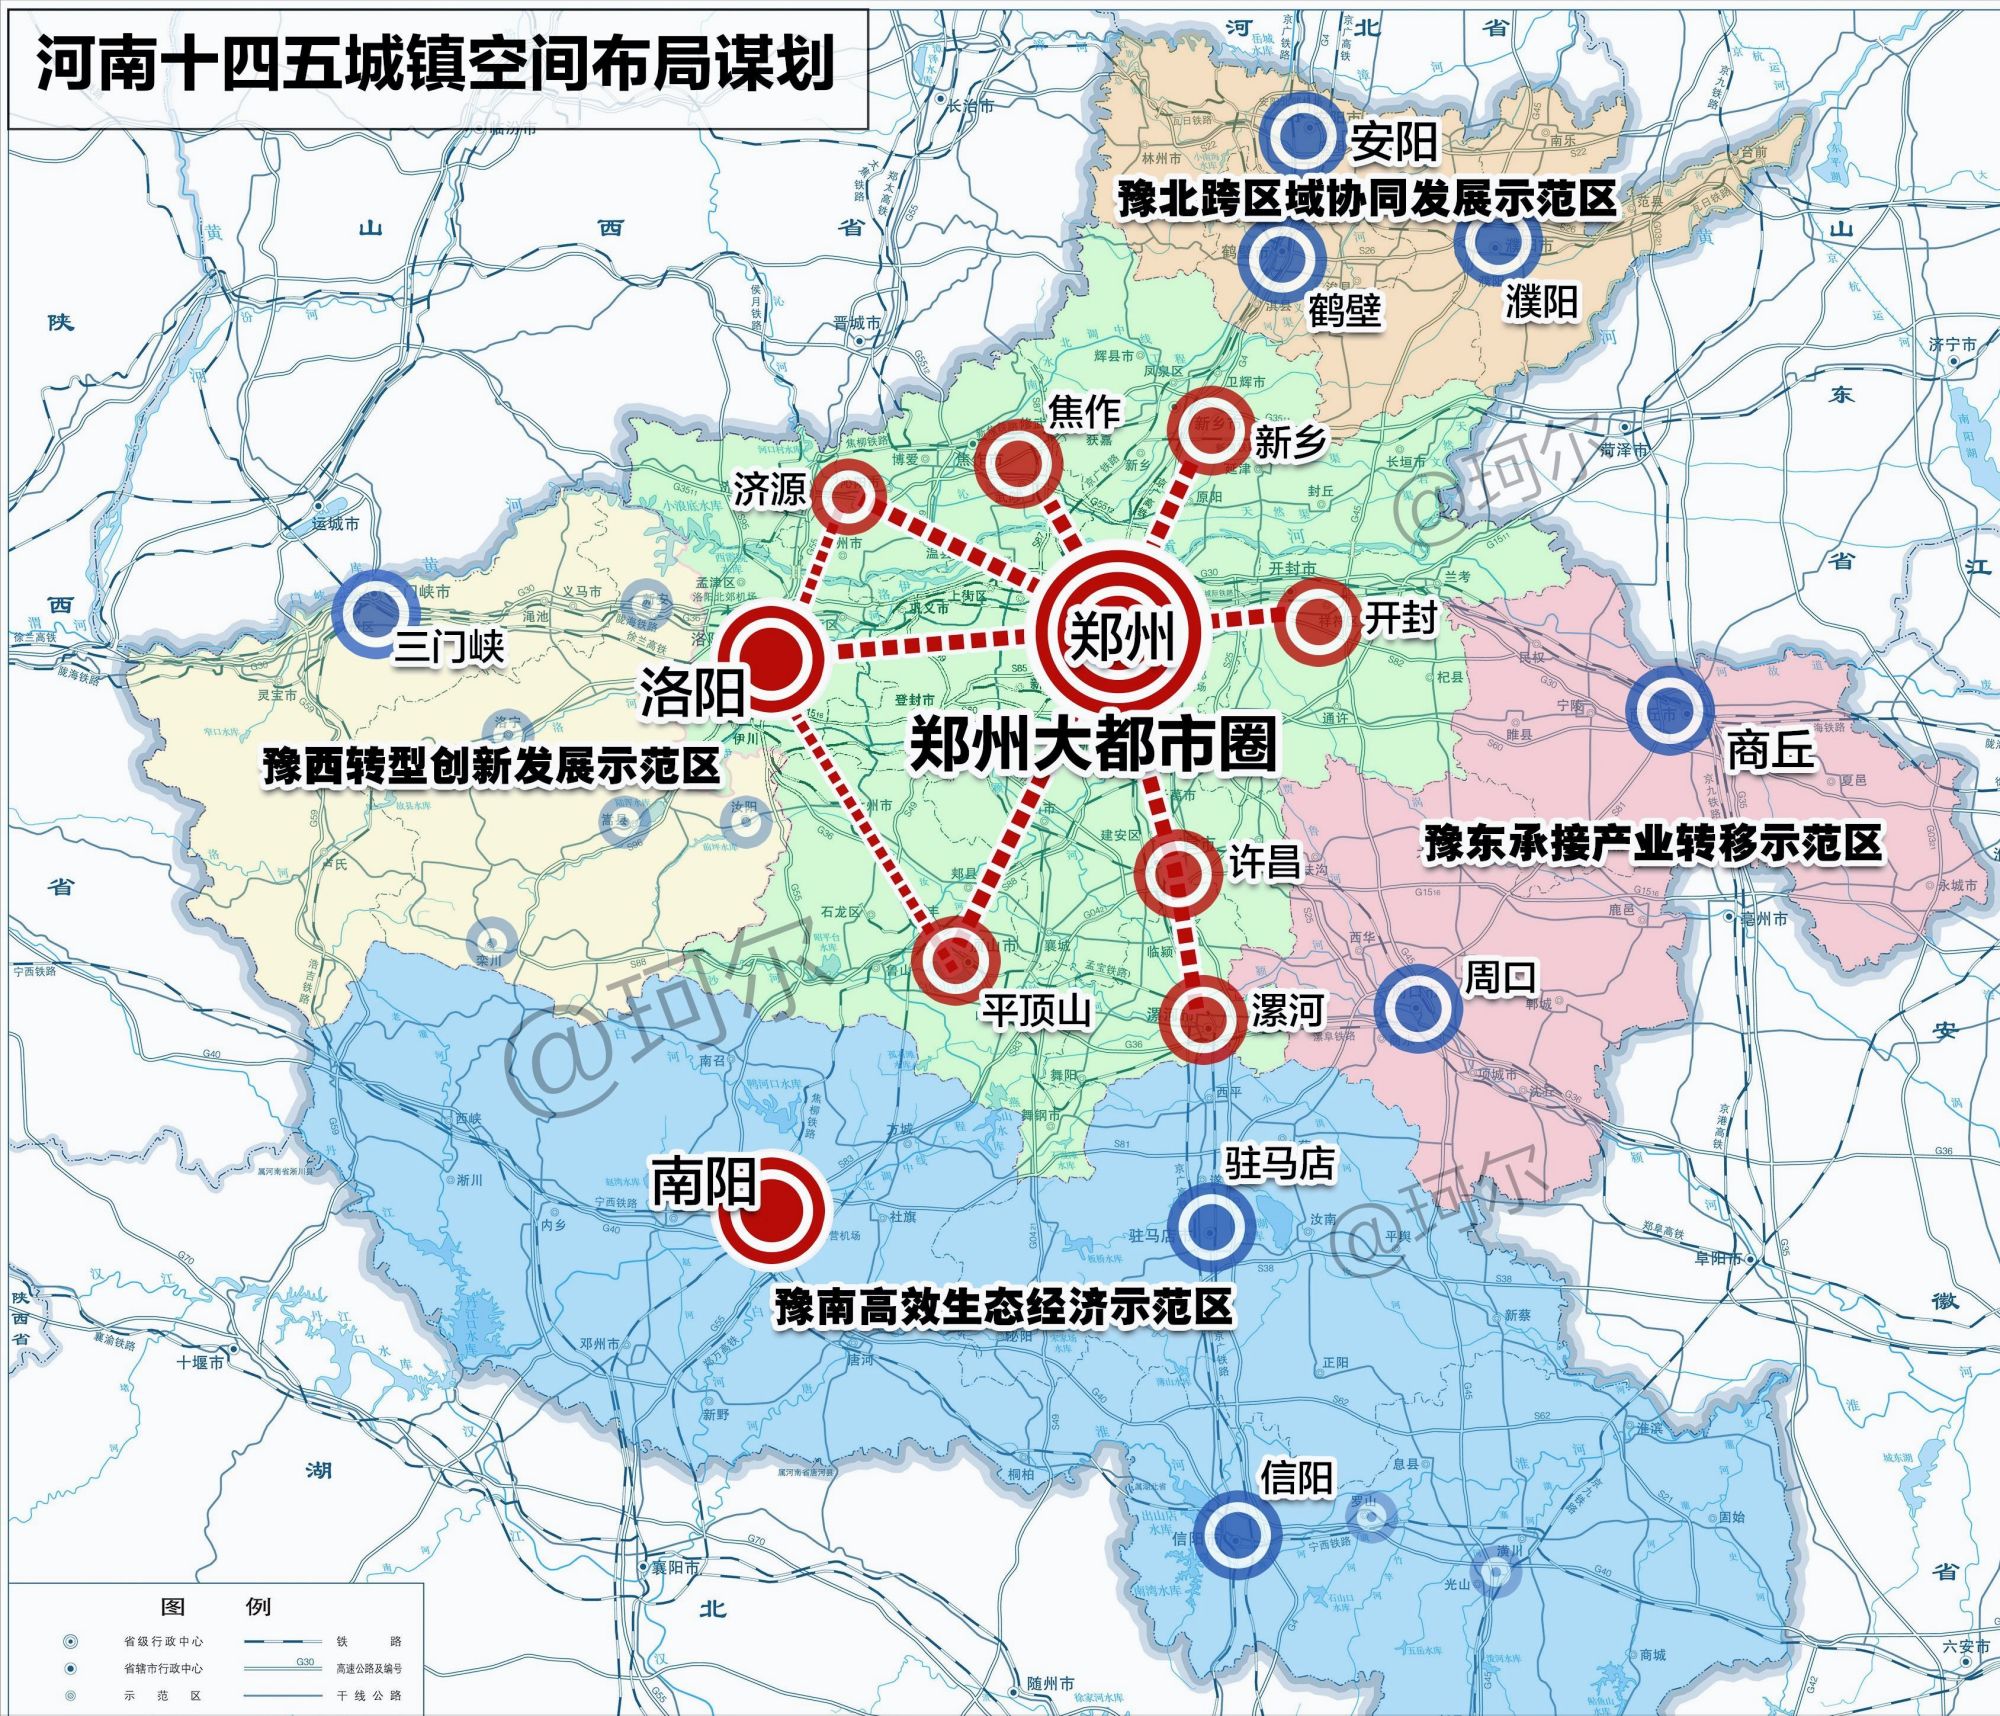 中原城市群升级为郑州都市圈,河南再次迎来重大发展机遇